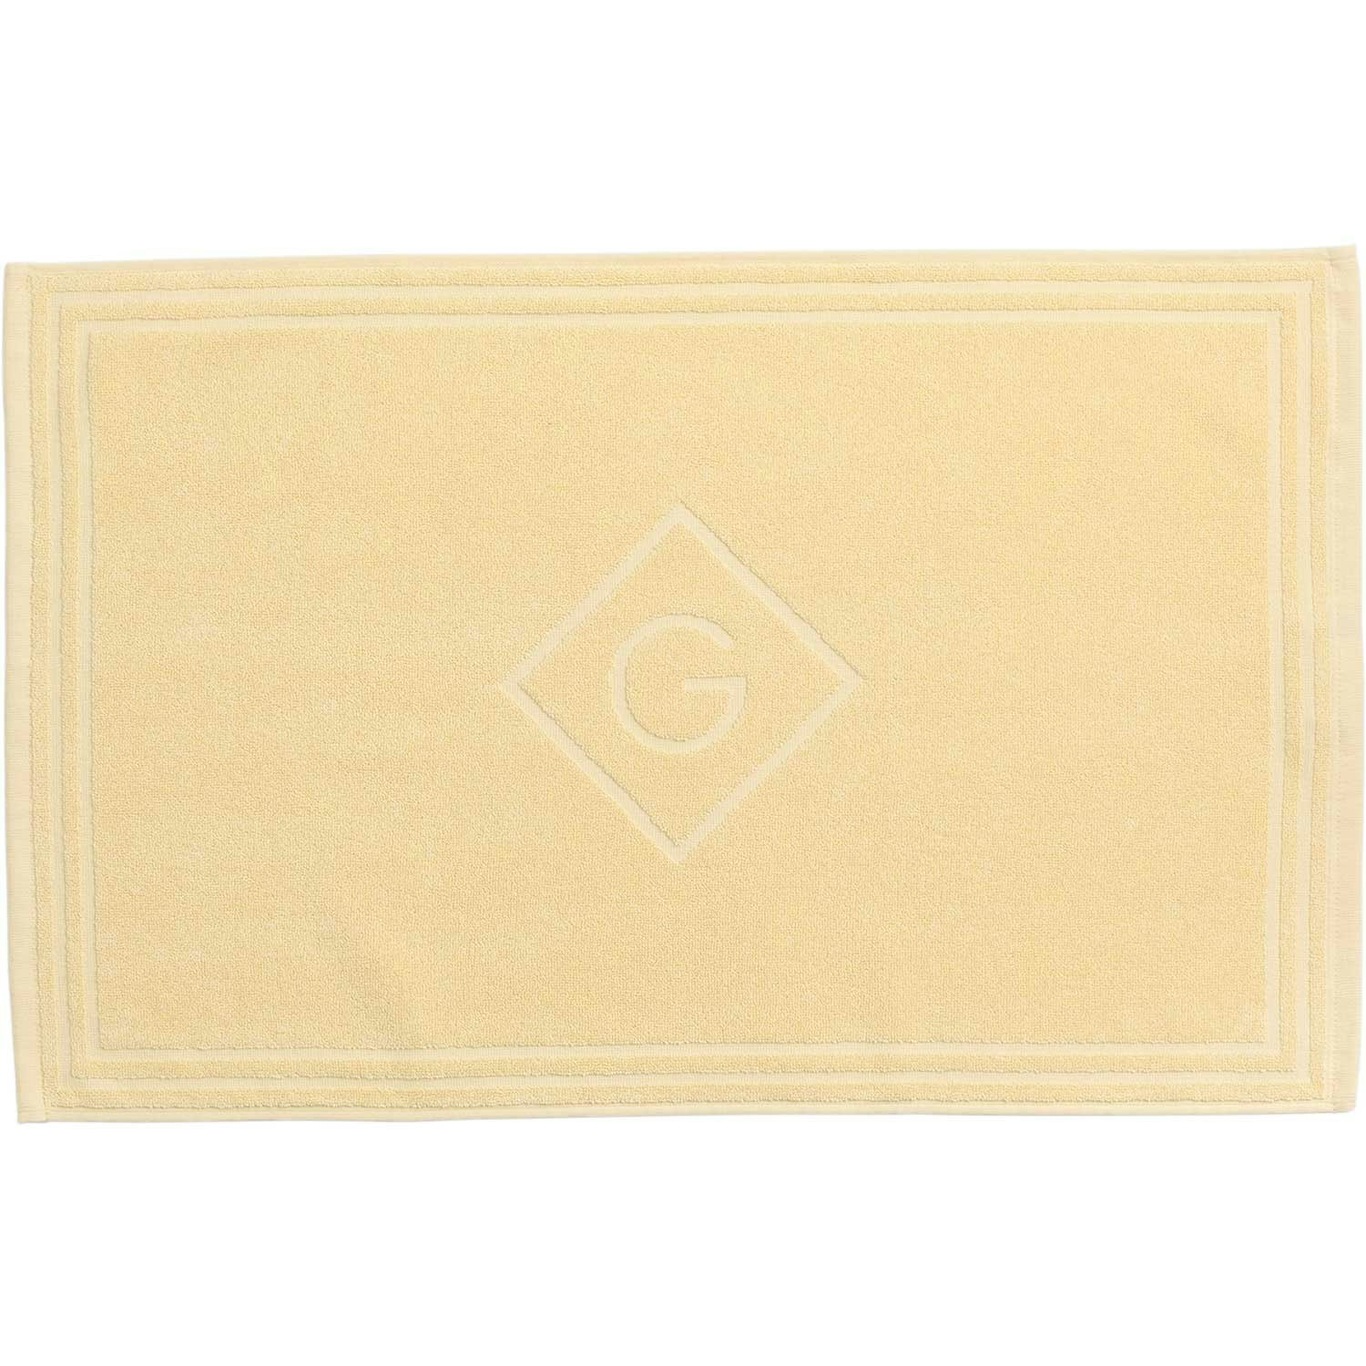 G Shower Mat 50x80 cm, Lemon